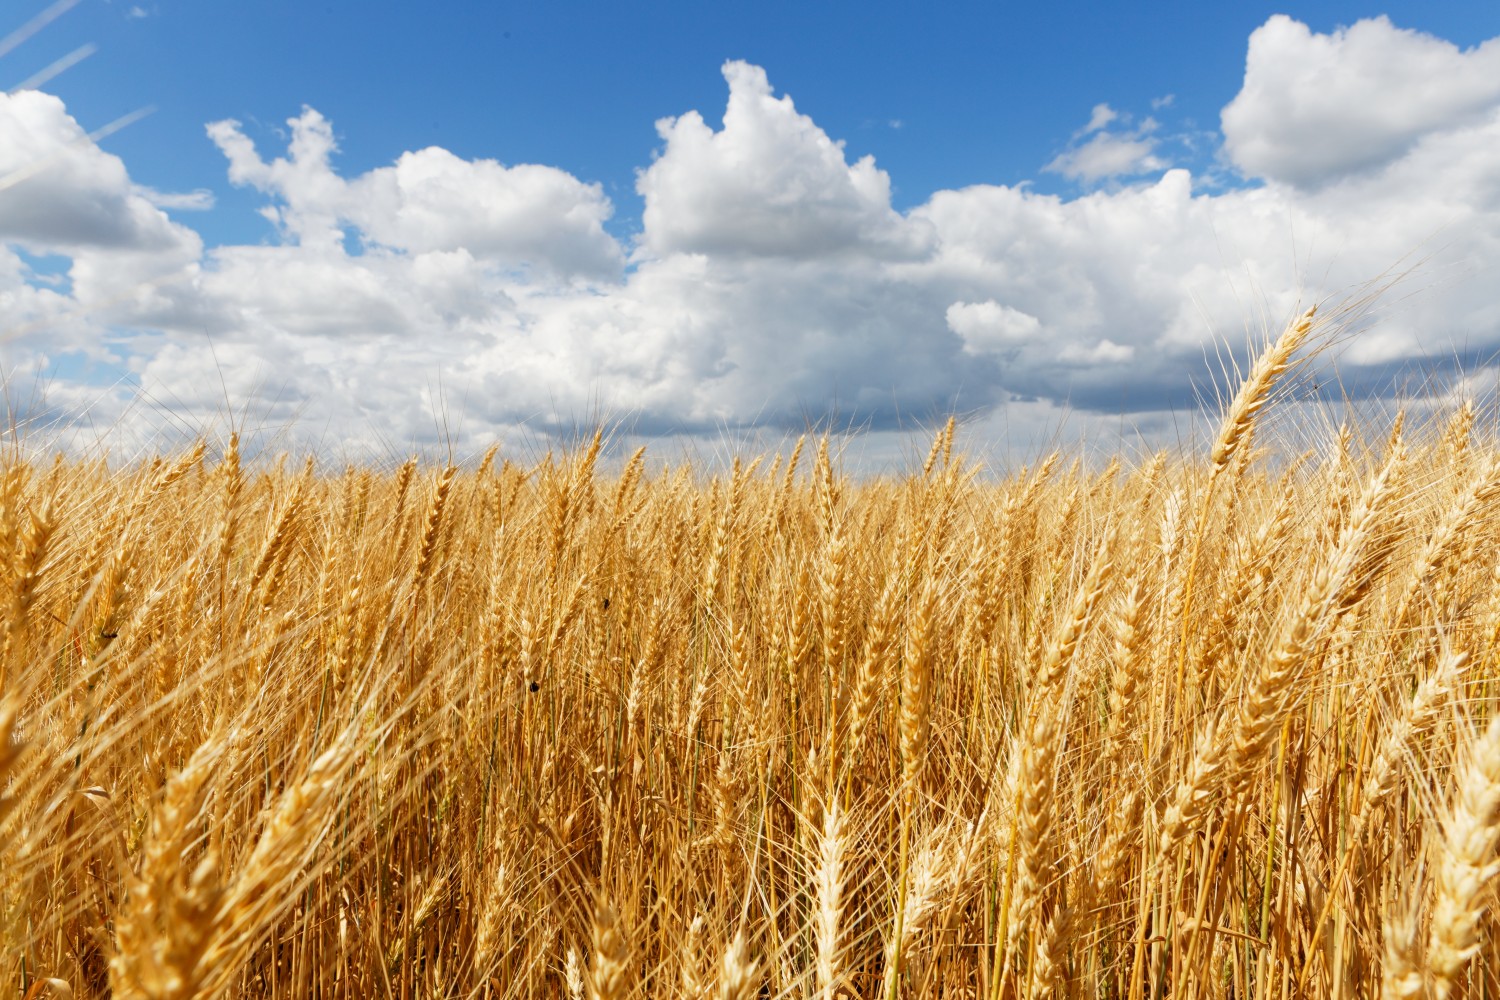 Алексей Иванов для “России24”: Наши экспортеры зерна заинтересованы в обеспечении стабильного спроса